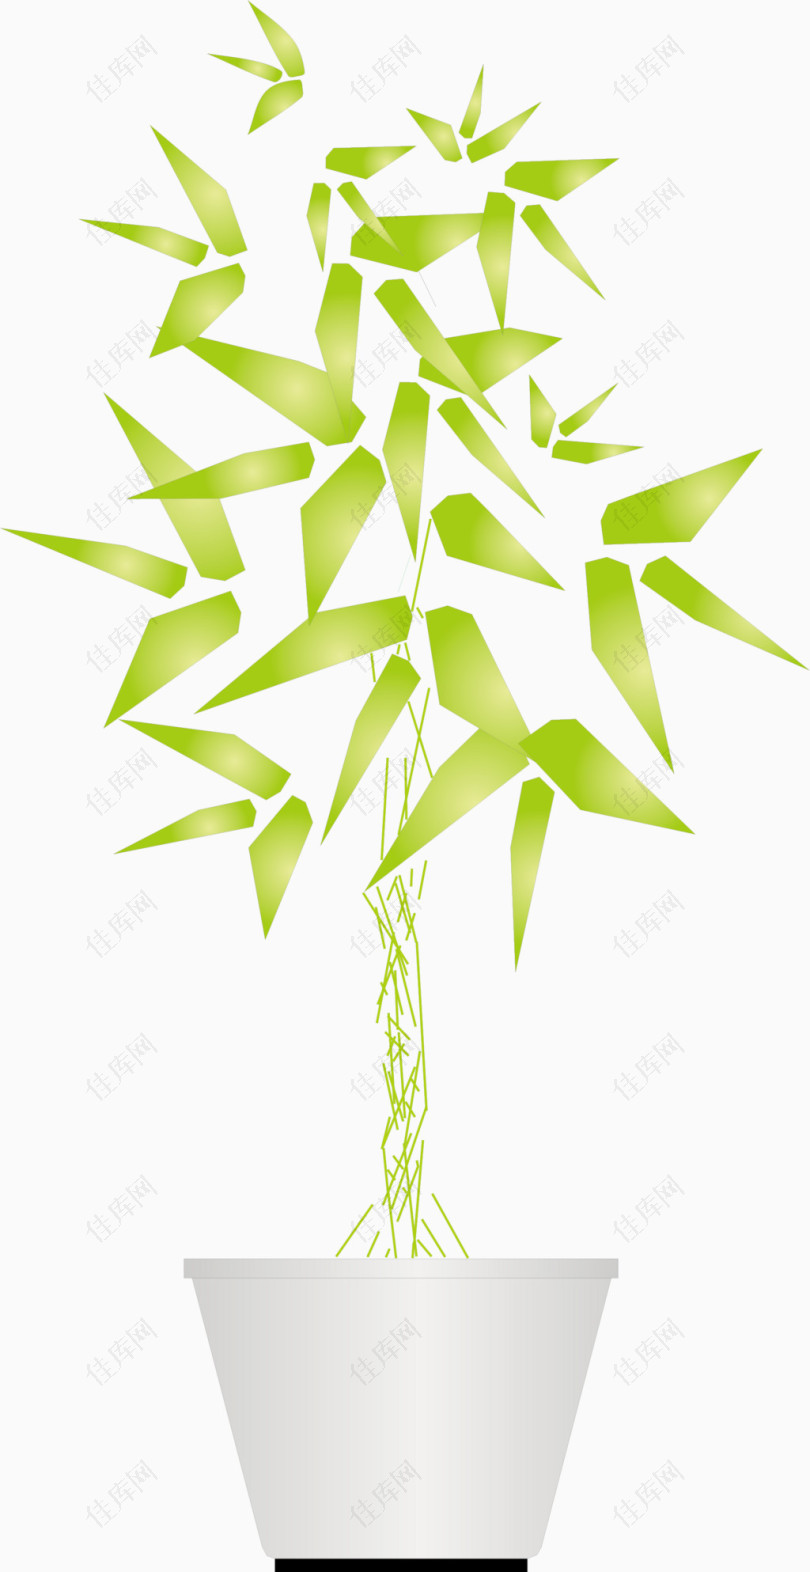 矢量立面绿色竹子盆栽装饰品